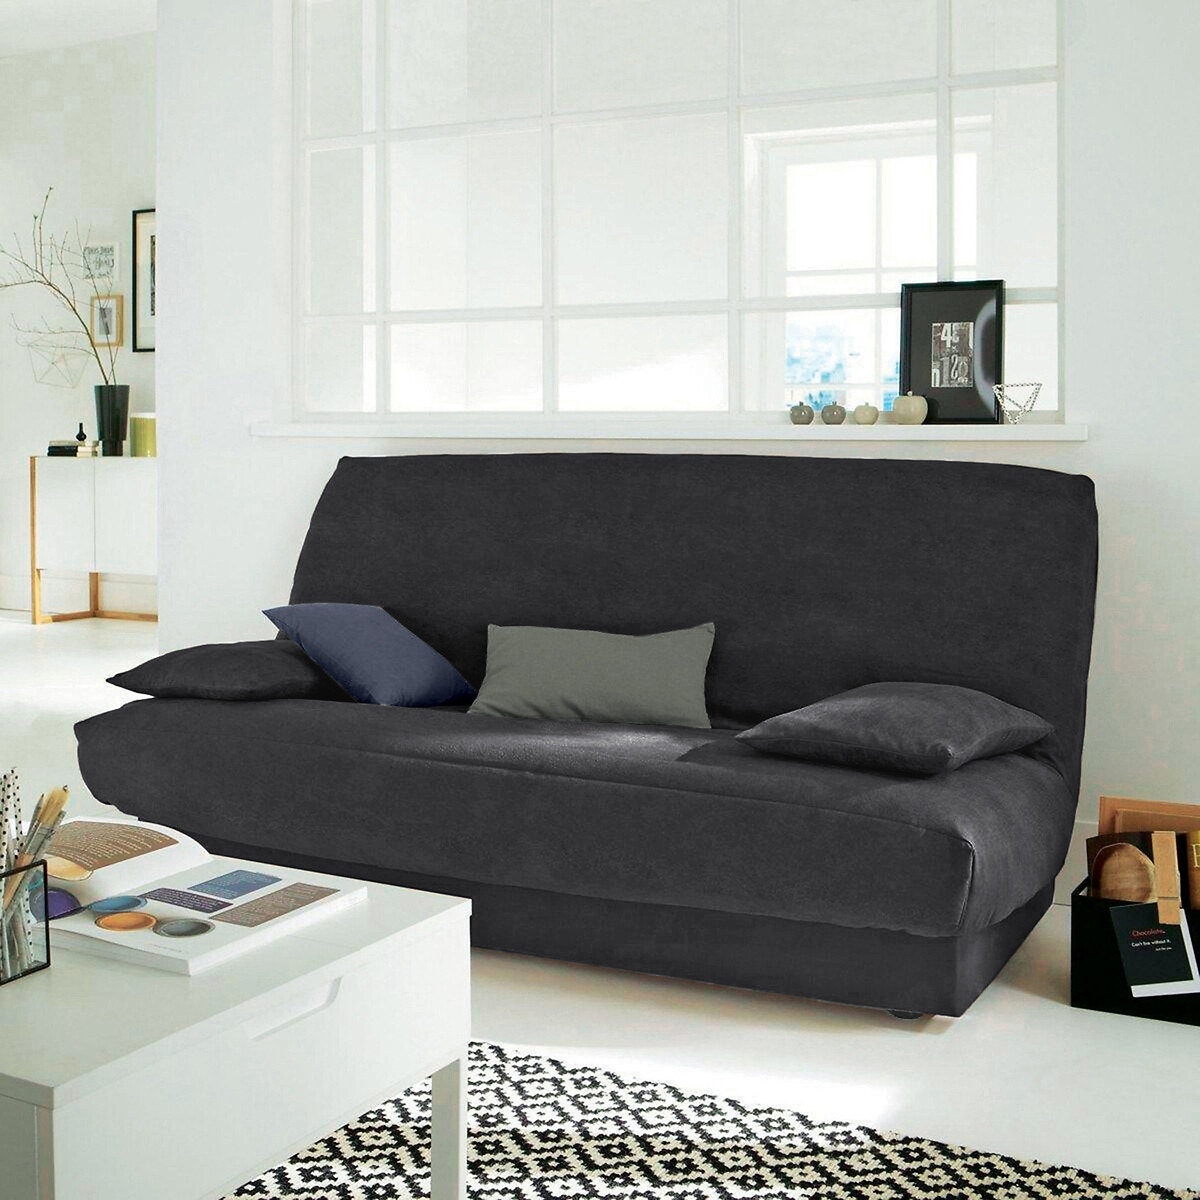 Σπίτι > Λευκά είδη > Ύφασμα, διακόσμηση > Καλύμματα καναπέ, καρέκλας > Καλύμματα για πτυσσόμενο καναπέ clic-clac, BZ Κάλυμμα βάσης από σουετίνα για καναπέ τύπου ακορντεόν One size